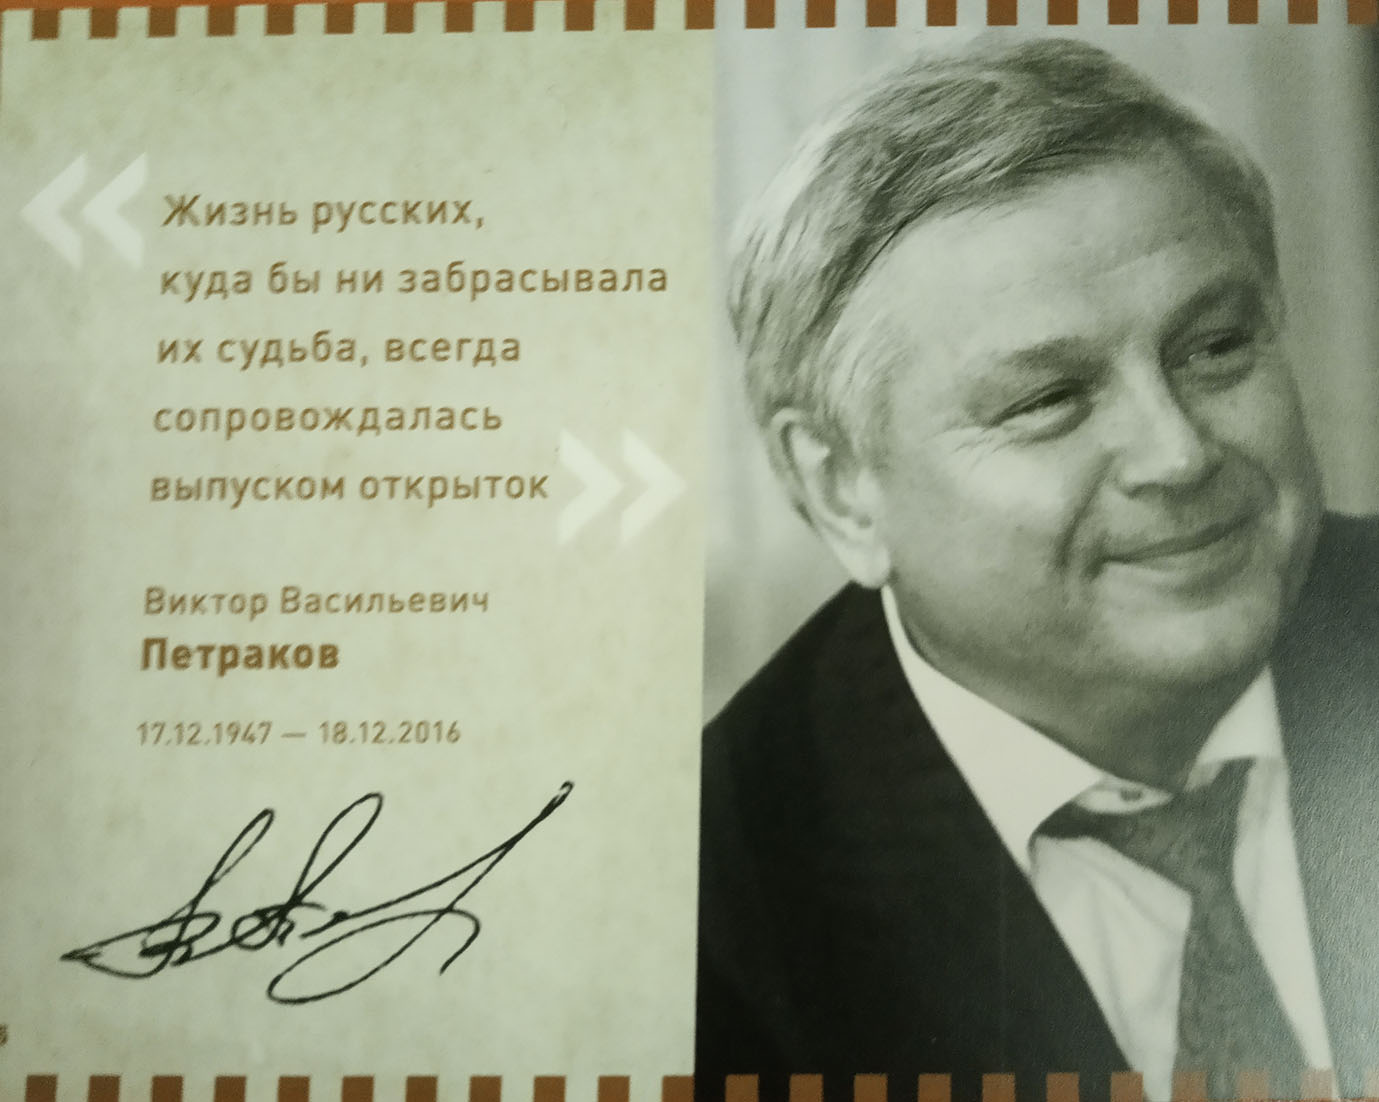 РГБИ получила в дар книги и открытки из личной коллекции В.В. Петракова